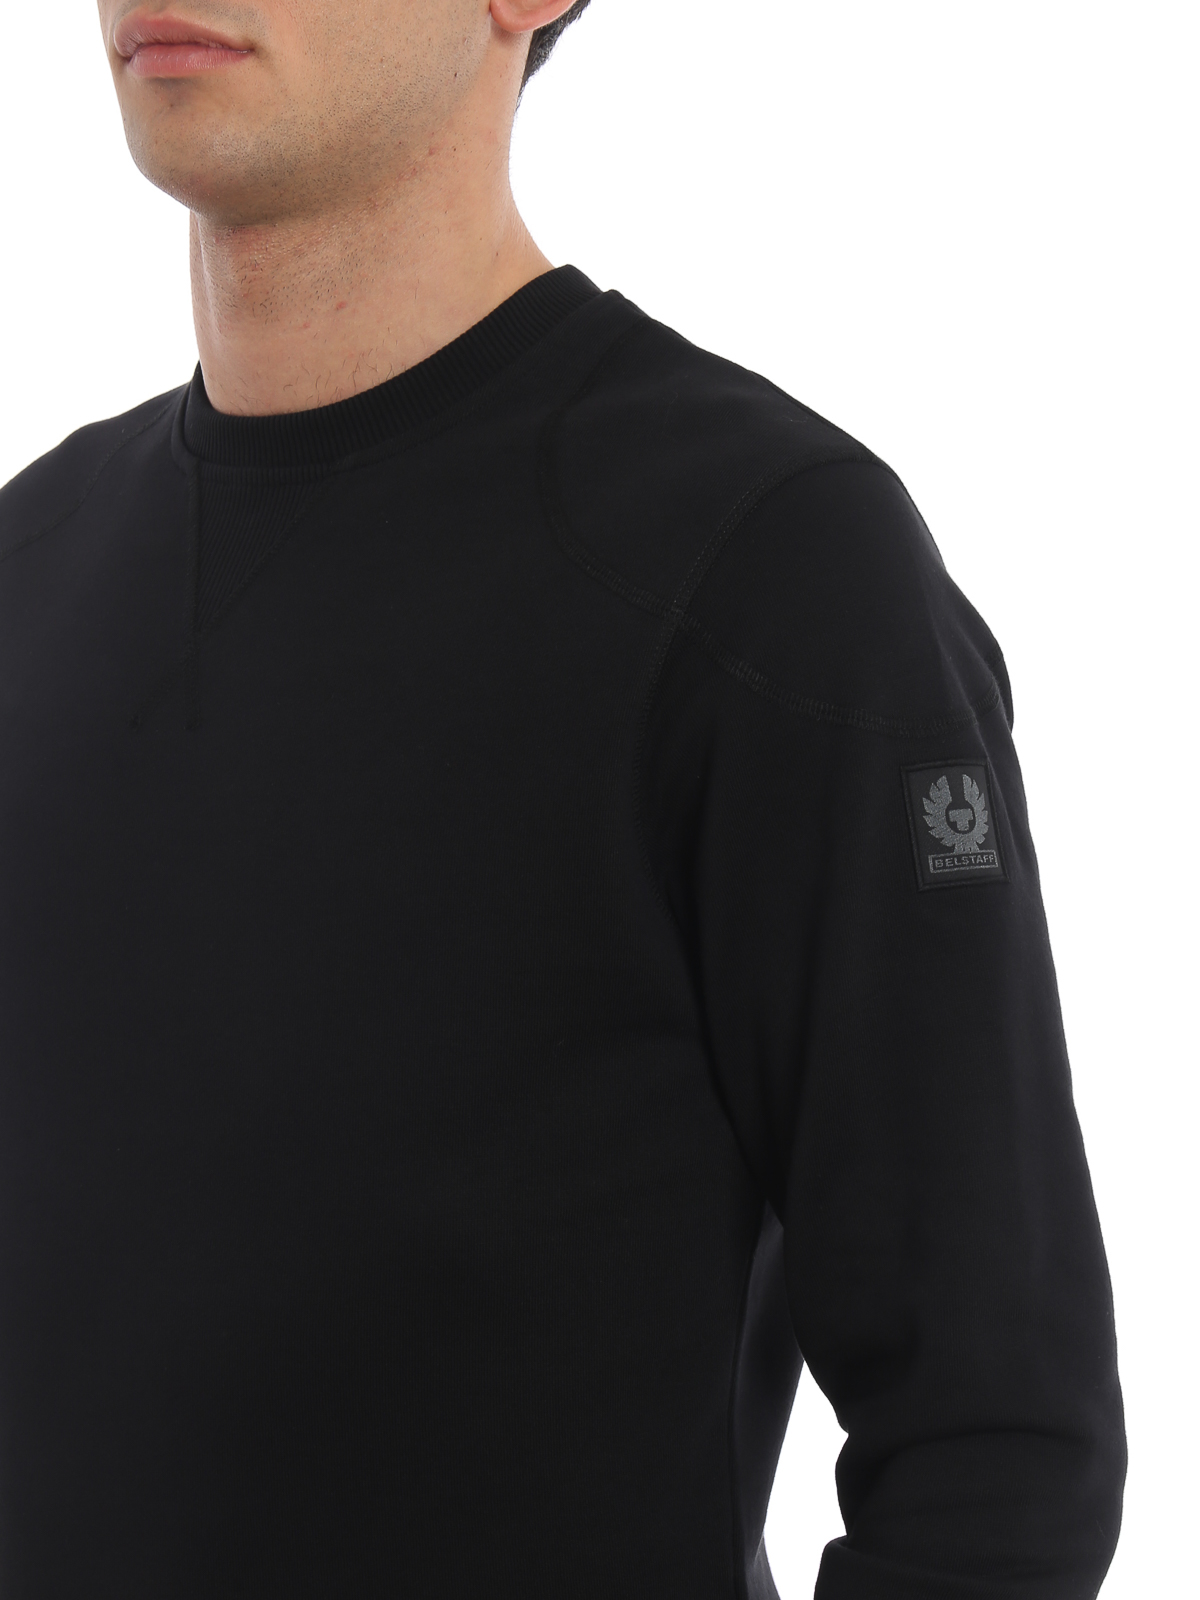 Onbeleefd binnen Arthur Sweatshirts & Sweaters Belstaff - Jefferson black cotton sweatshirt -  71130385J61A006690000